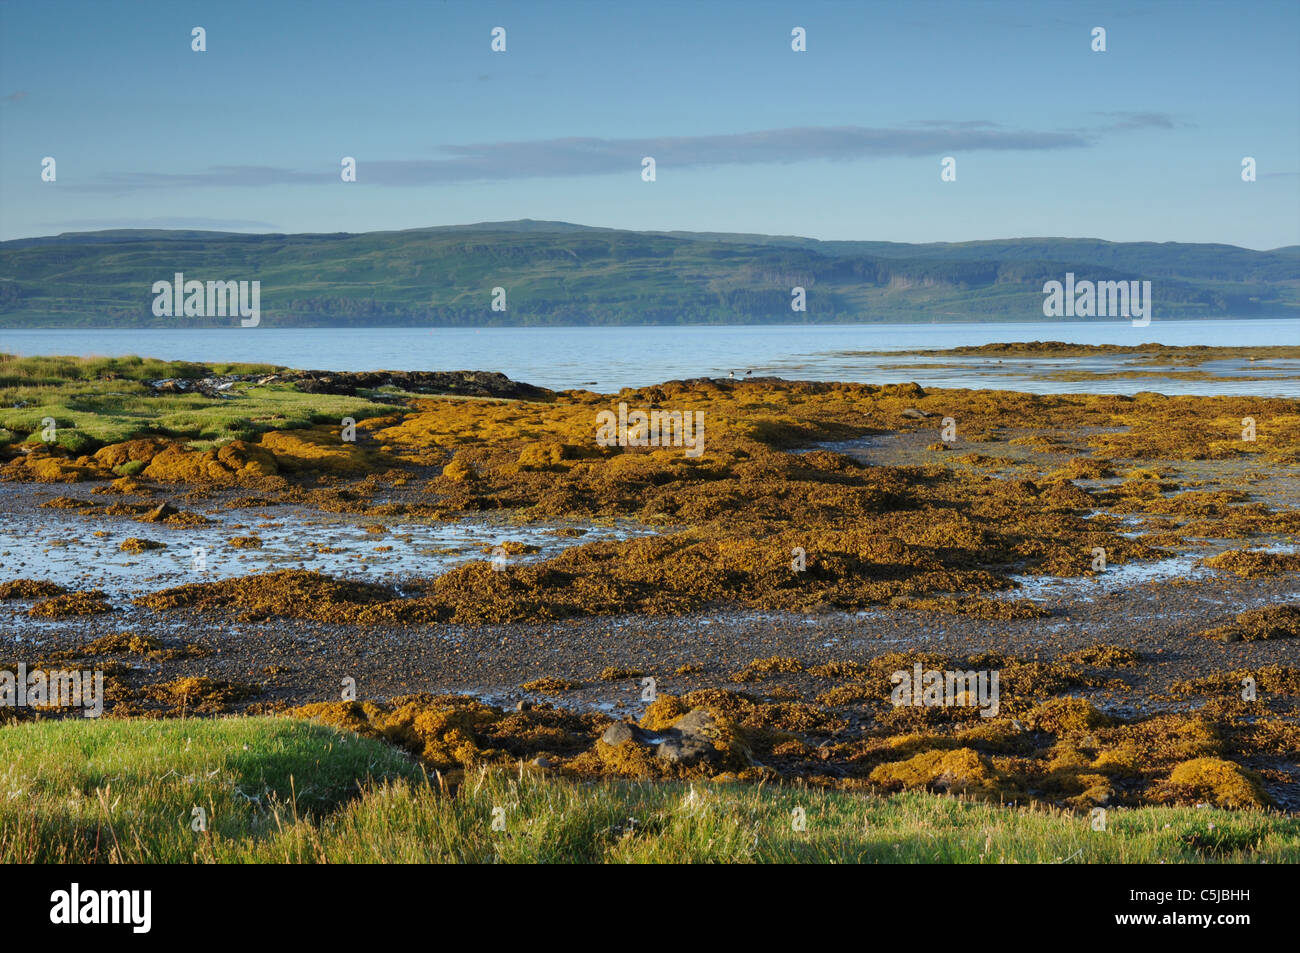 Seaweed covered rocks, Salen Bay, Isle of Mull, Argyll, Scotland, UK Stock Photo